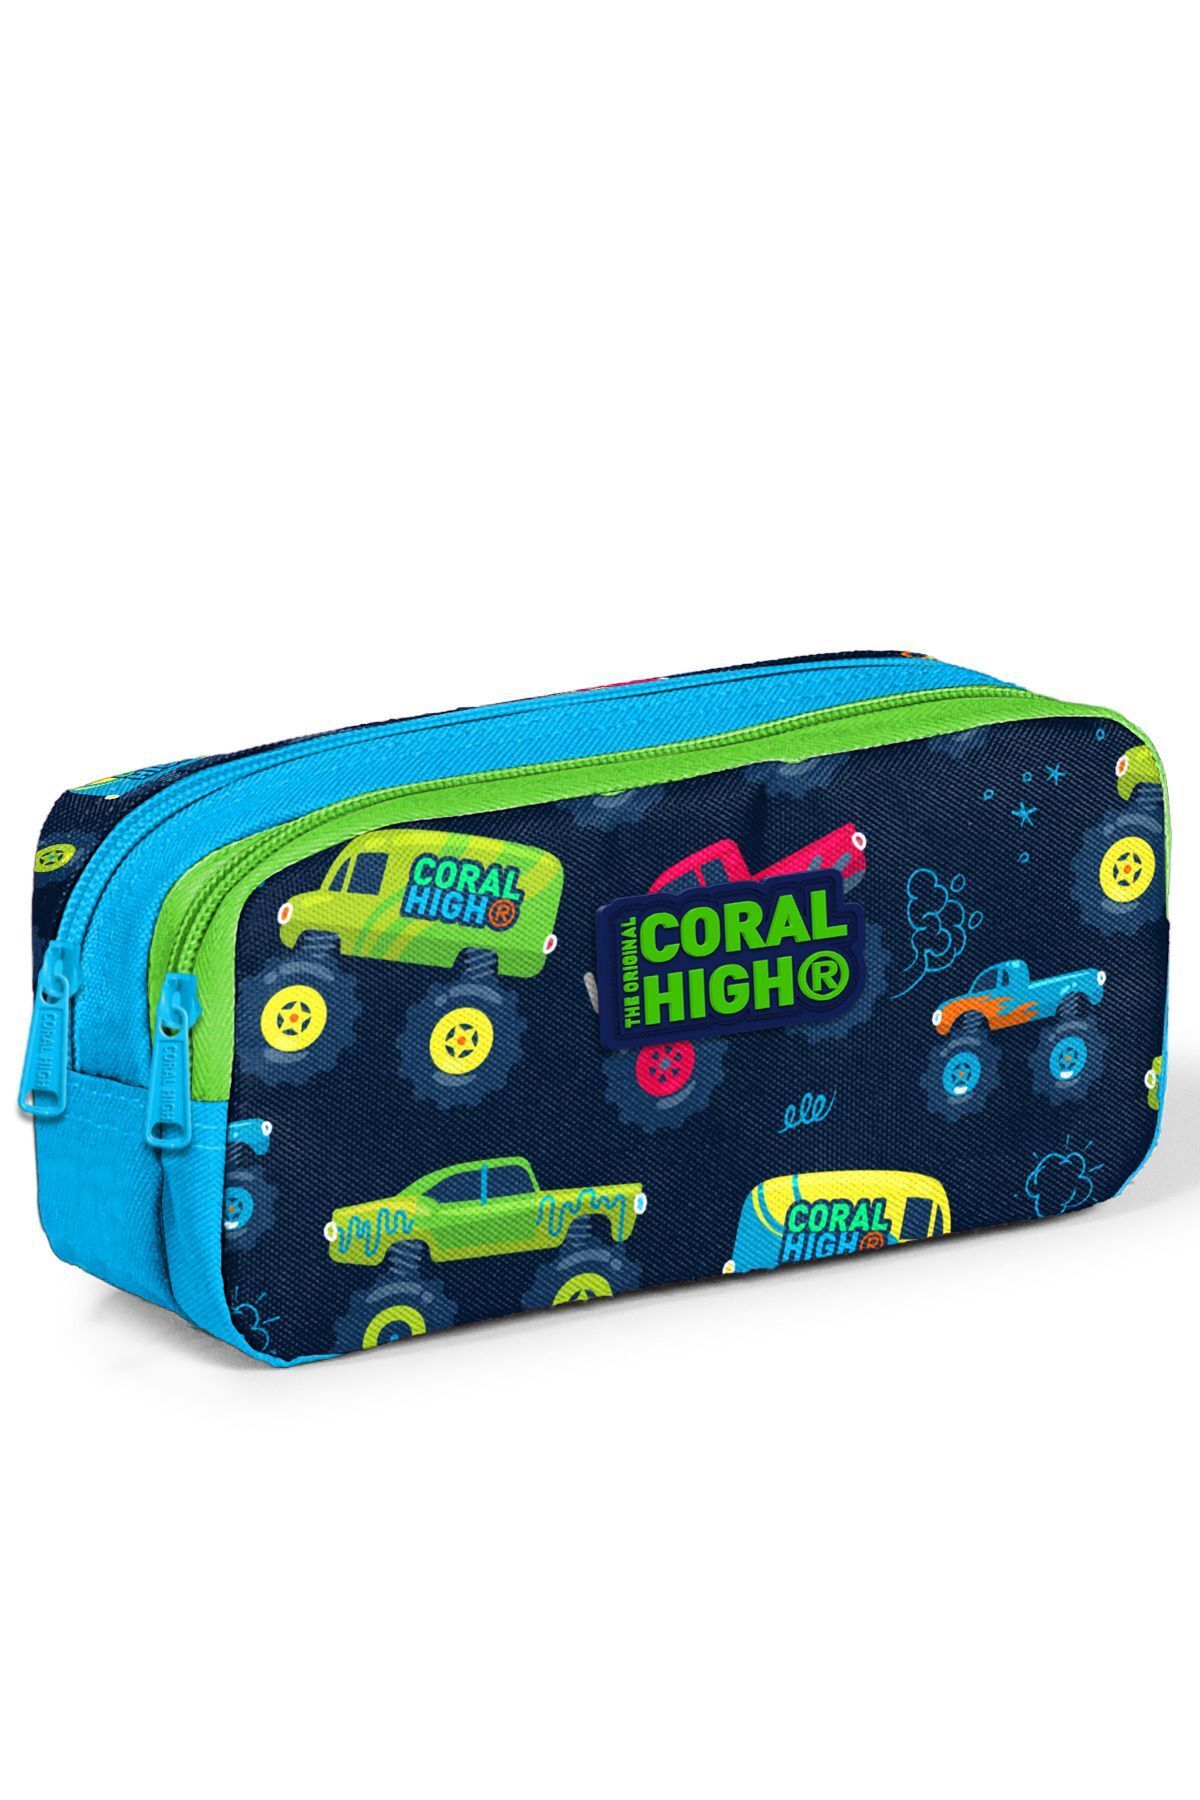 Yaygan Çanta Coral High Kids Mavi Lacivert Monster Truck Desenli İki Bölmeli Kalem Çantası 22285